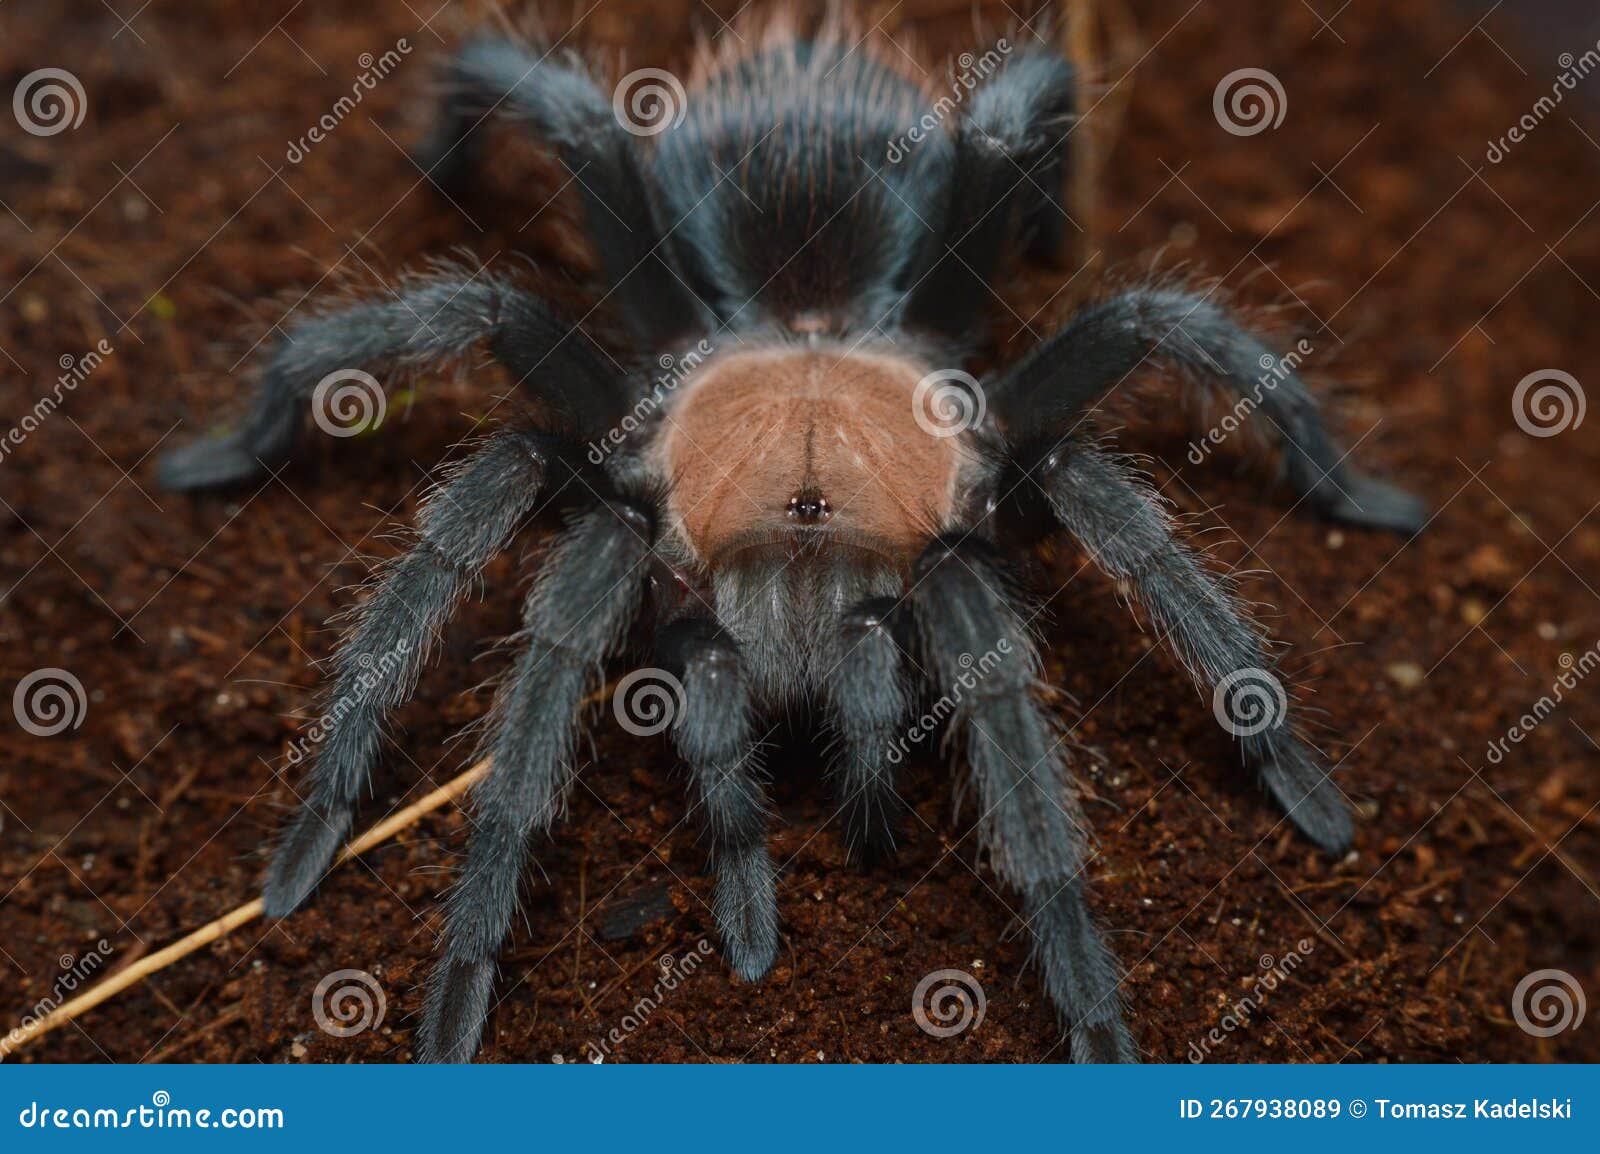 Brachypelma Albiceps Spider Close Up Stock Image | CartoonDealer.com ...